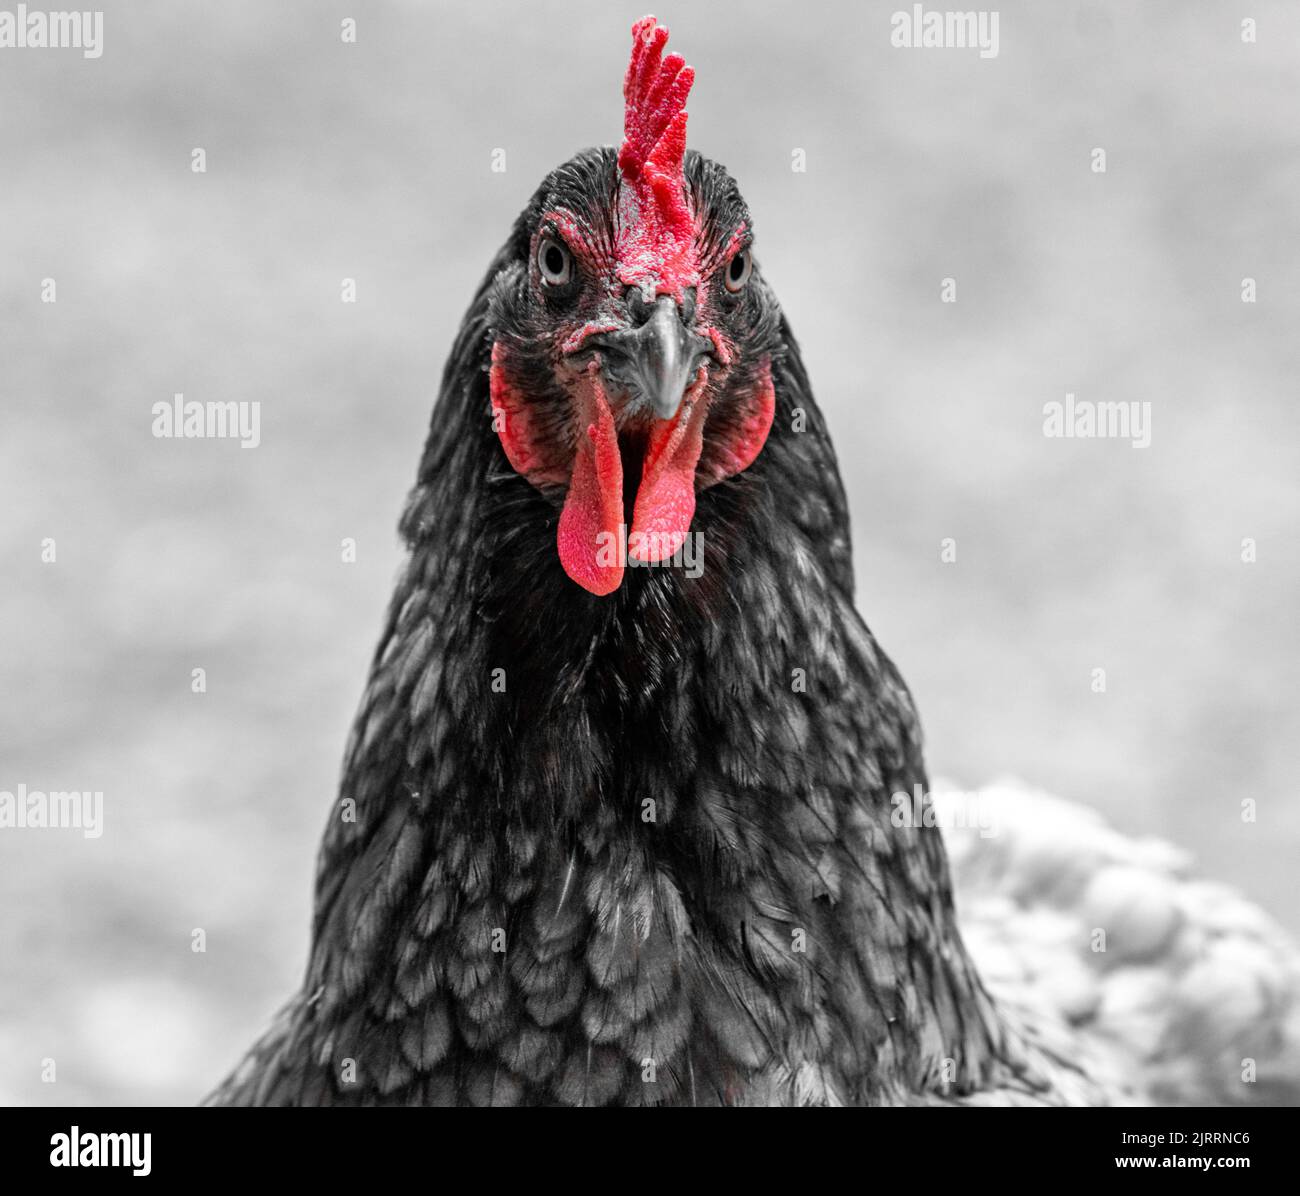 Hen, chicken Stock Photo